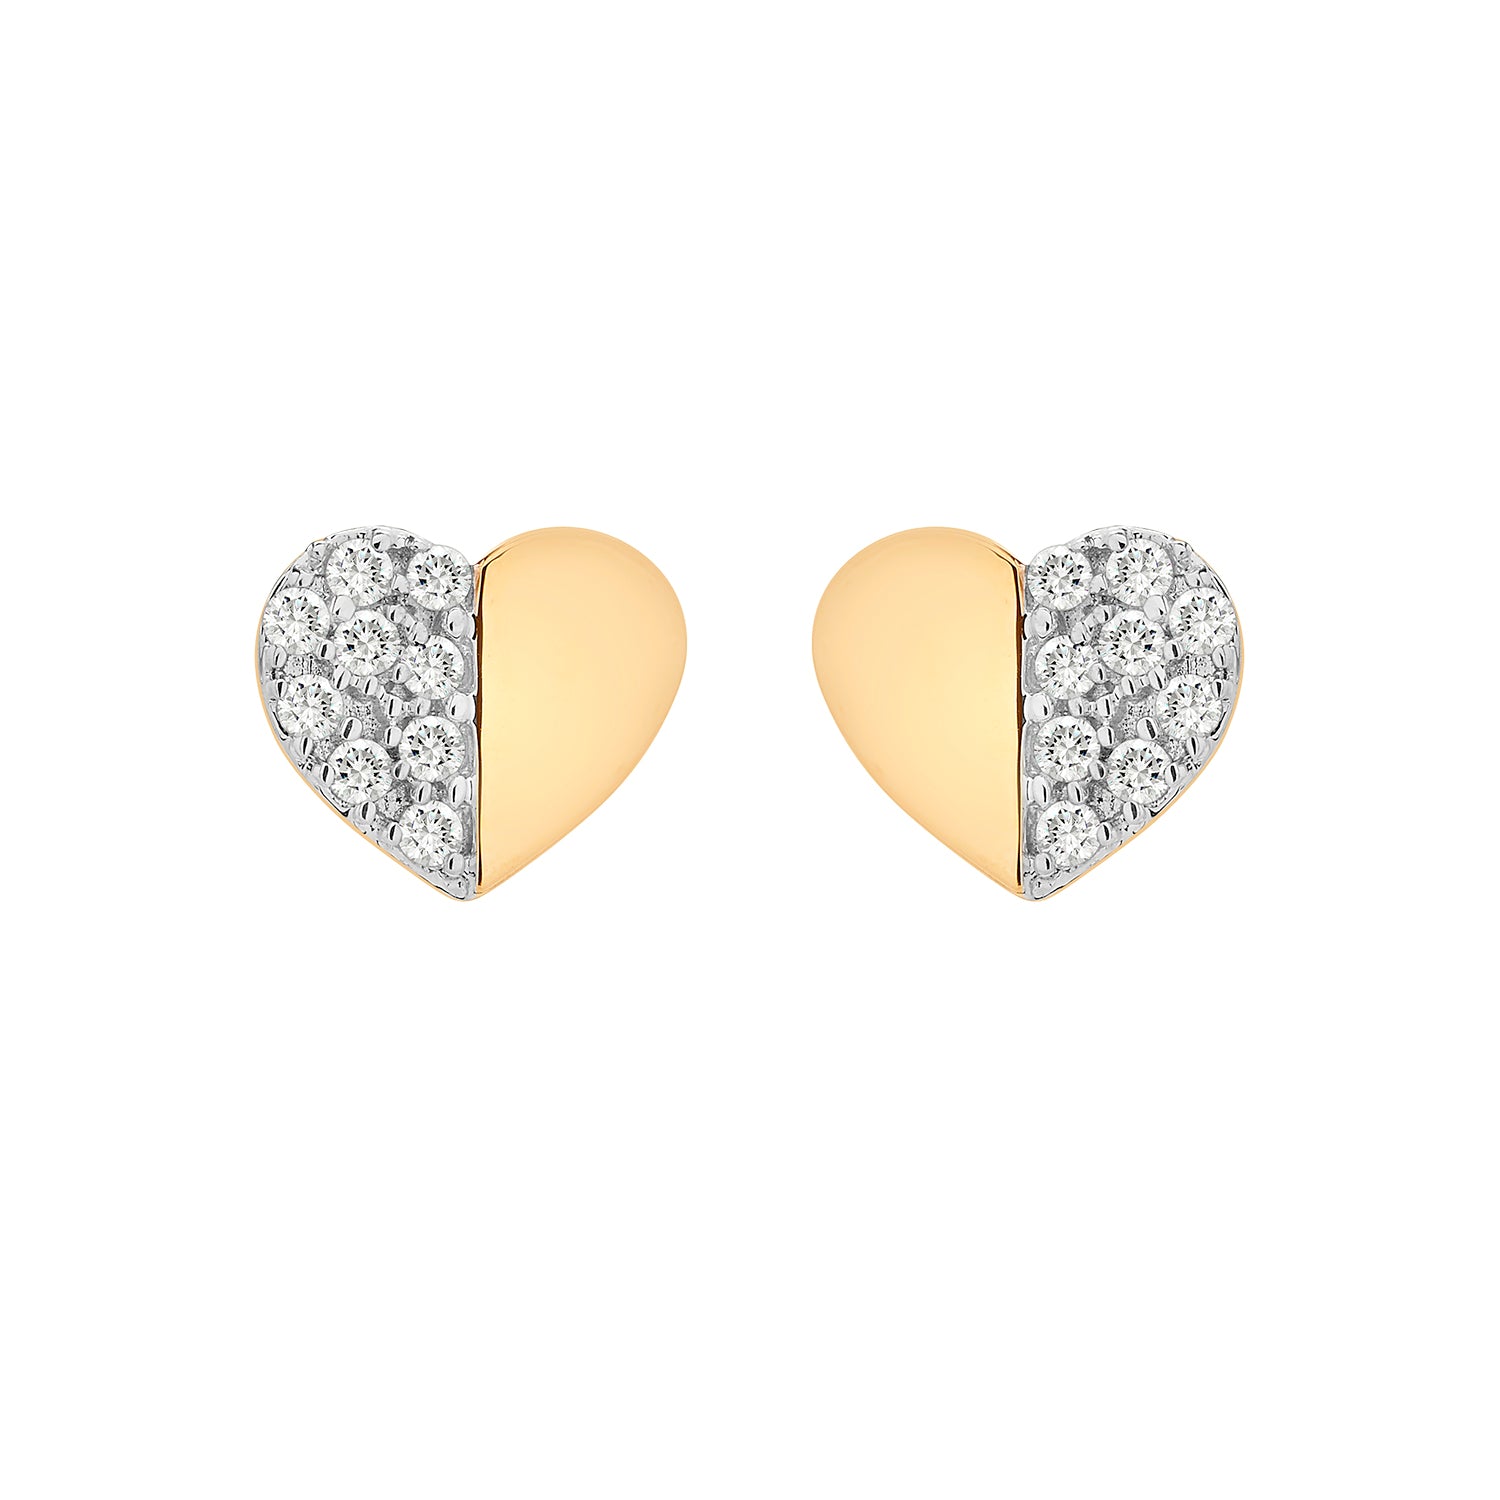 Encanta Gold and Diamond Heart Earrings